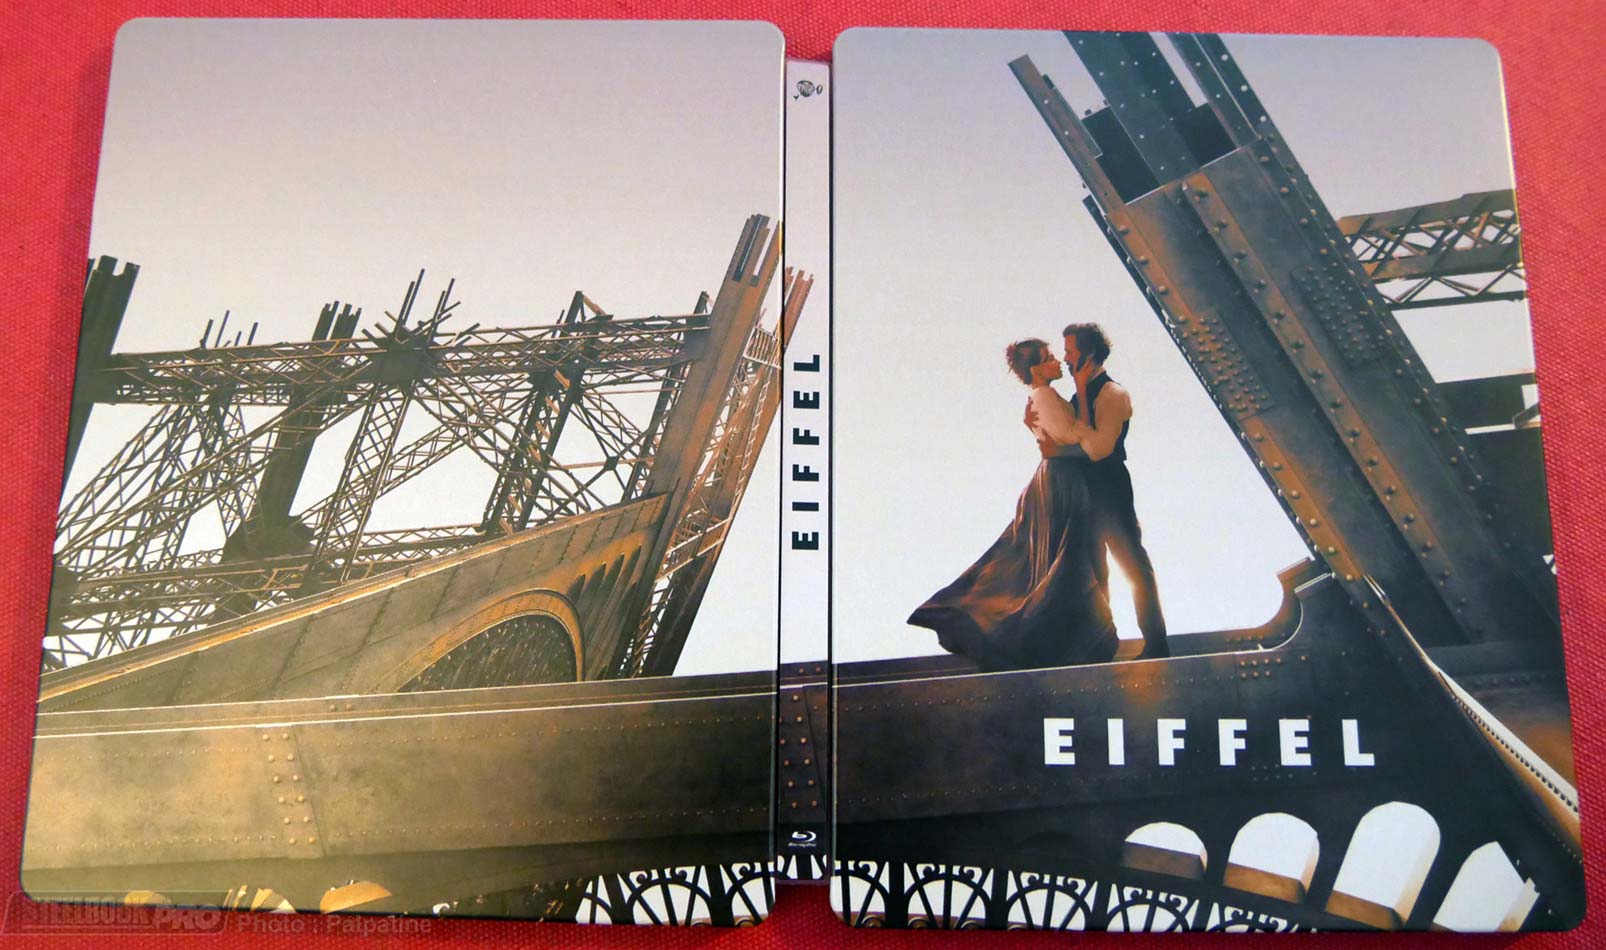 Eiffel-steelbook-2.jpg